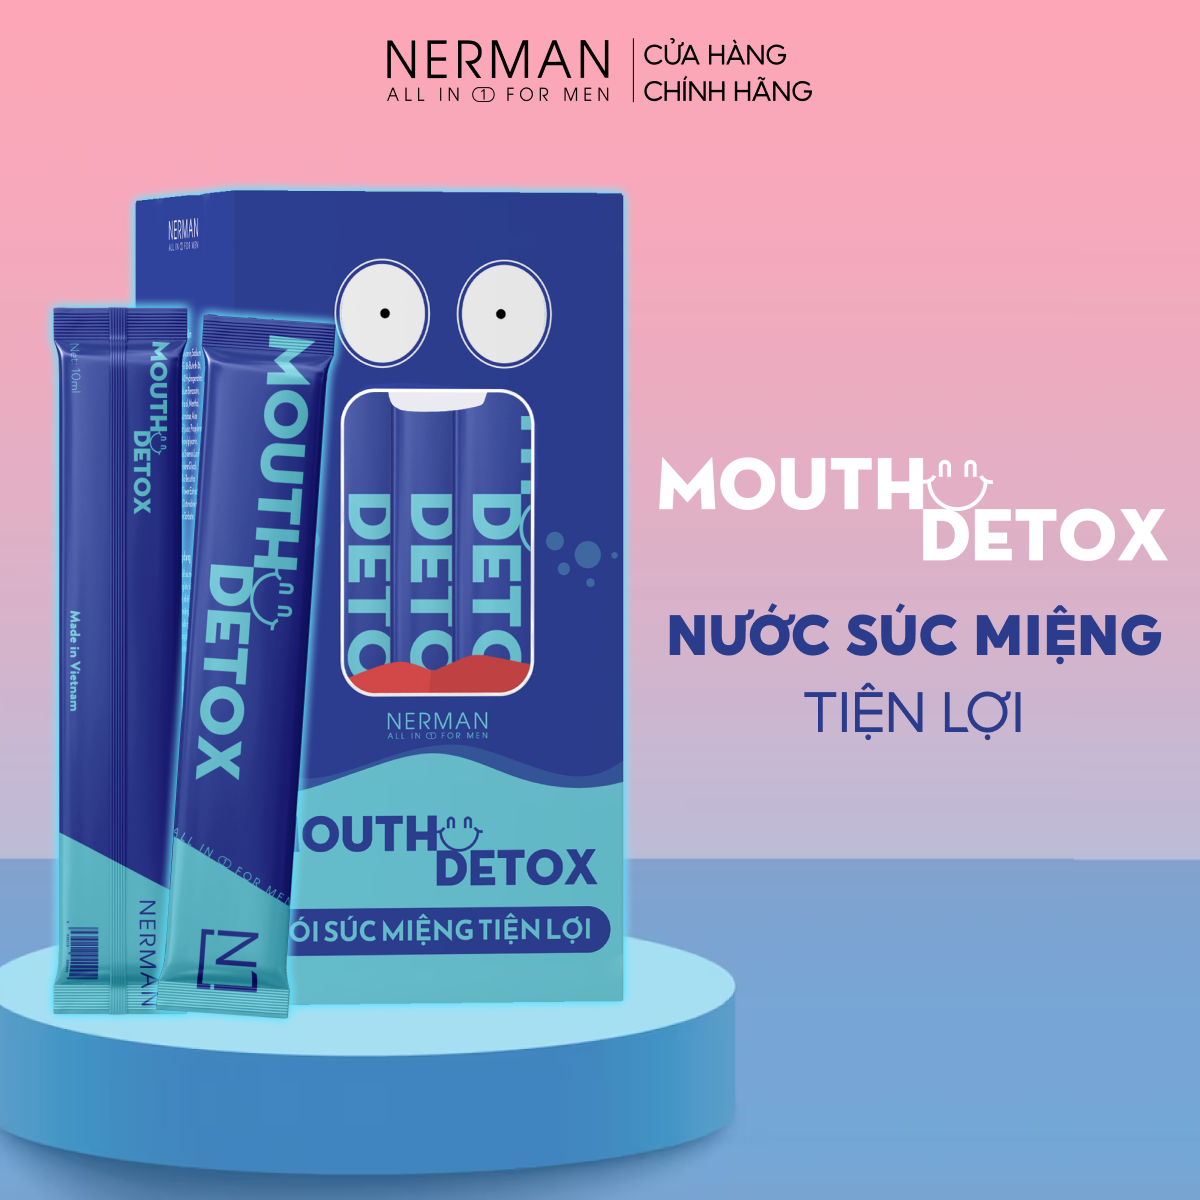 Nước súc miệng dạng gói Mouth Detox Nerman 10ml tiện lợi